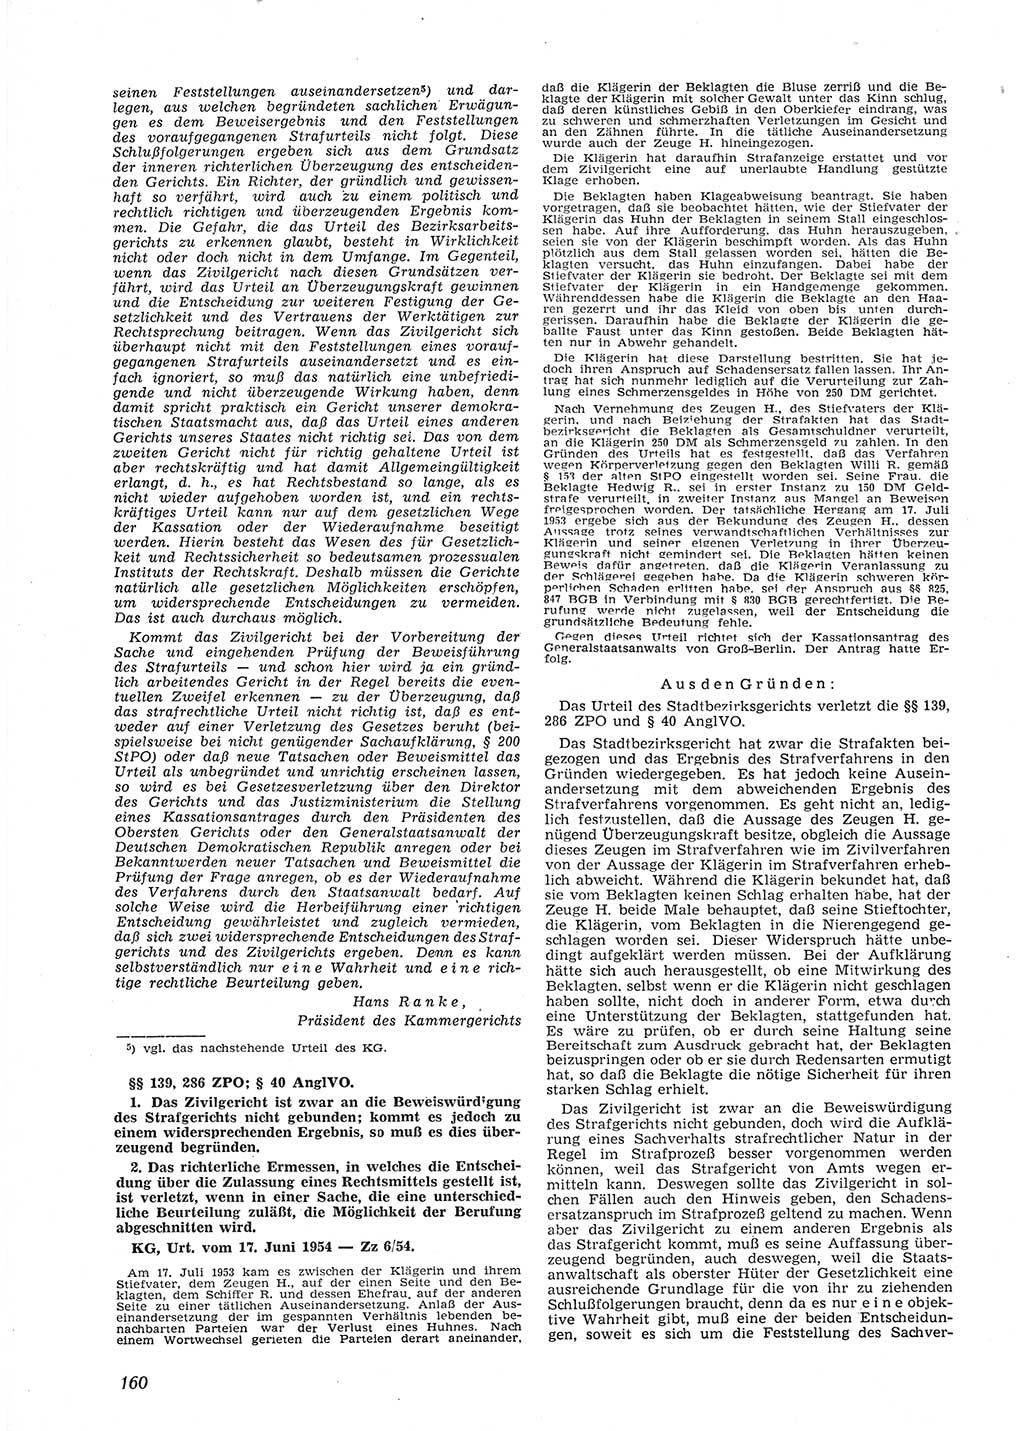 Neue Justiz (NJ), Zeitschrift für Recht und Rechtswissenschaft [Deutsche Demokratische Republik (DDR)], 9. Jahrgang 1955, Seite 160 (NJ DDR 1955, S. 160)